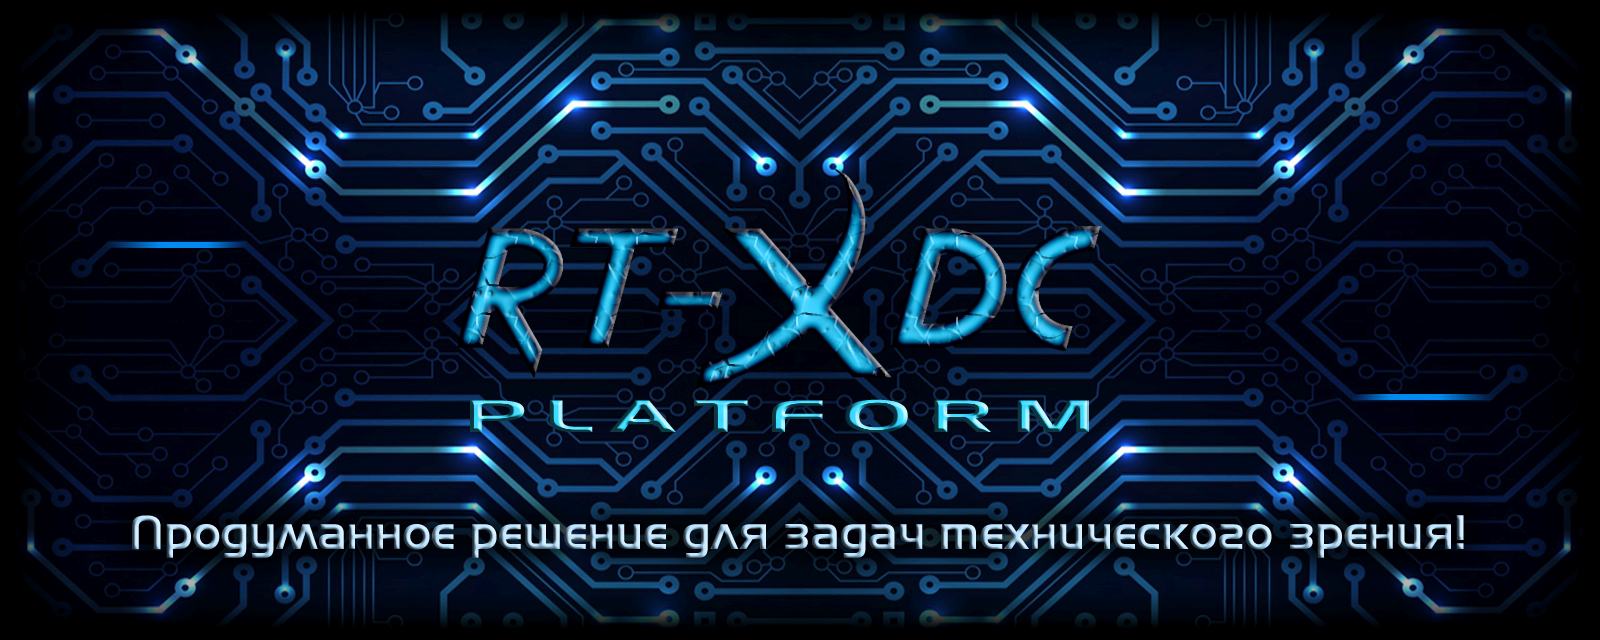 Платформа RT-XDC - продуманное решение для задач технического зрения!